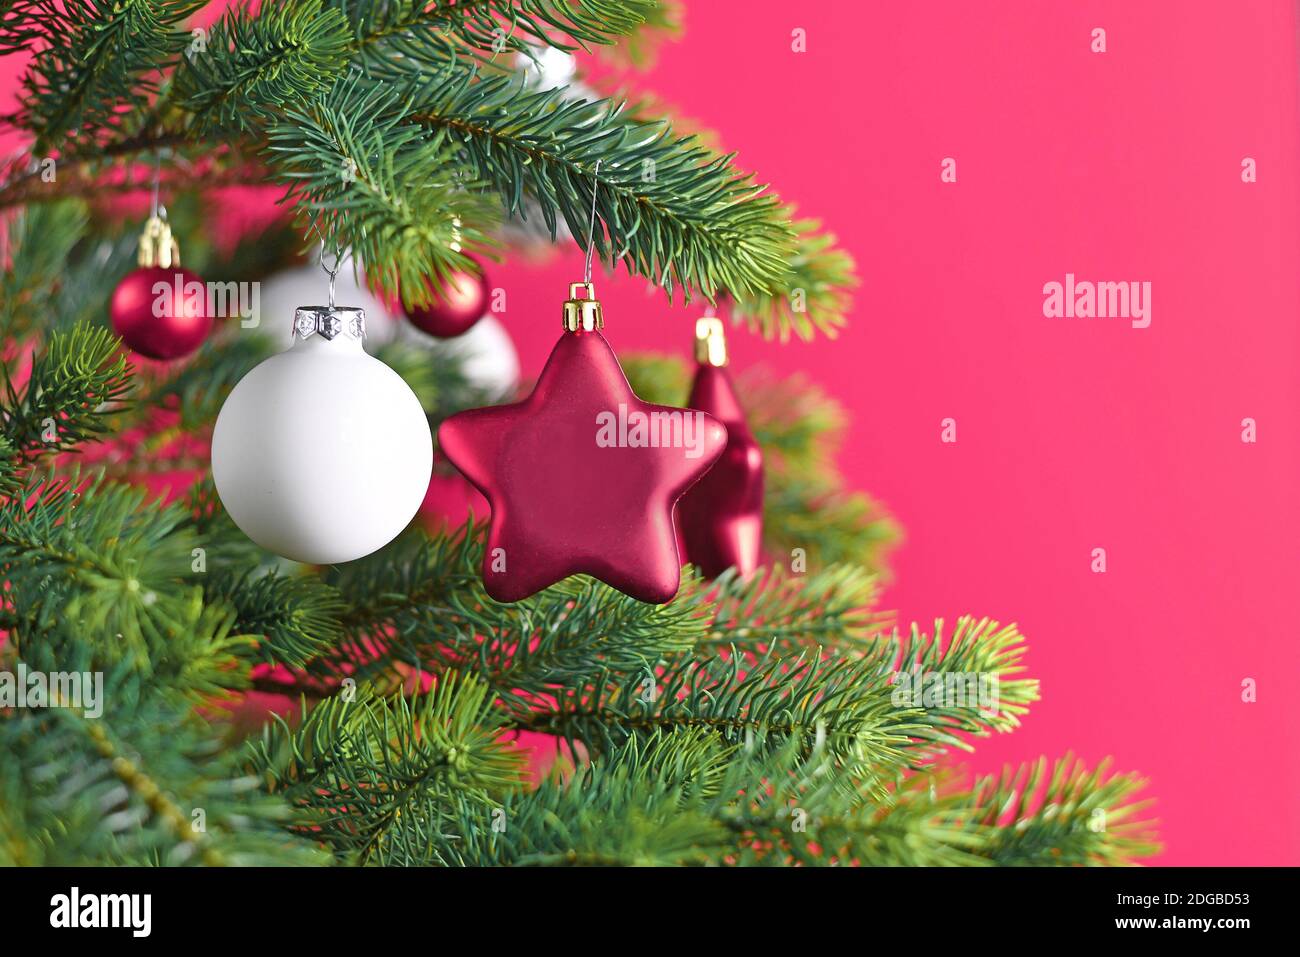 Nahaufnahme von geschmückten Weihnachtsbaum mit rosa Stern geformt Und weiße Kugel formt Baum Ornament Kugeln auf rosa Hintergrund Stockfoto